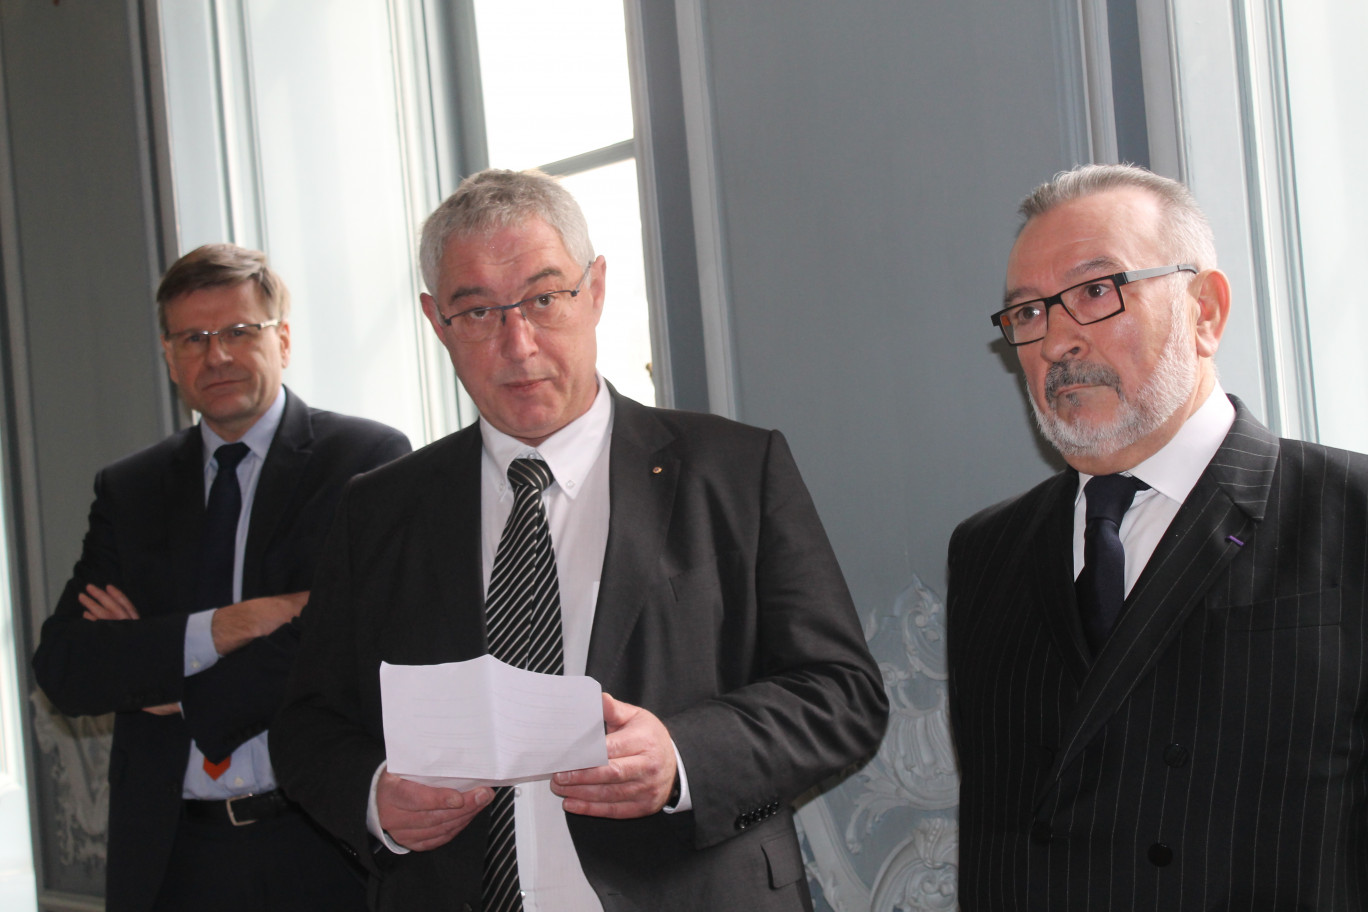 Au centre, le président en exercice de la Commpagnie Régionale des Commissaires aux Comptes Régis Gourlet, avec à sa gauche son prédécesseur le Lillois Gauthier Perthame, et à sa droite Pierre Poujol, parrain de la promotion et lui-même ancien président de la CRCC.